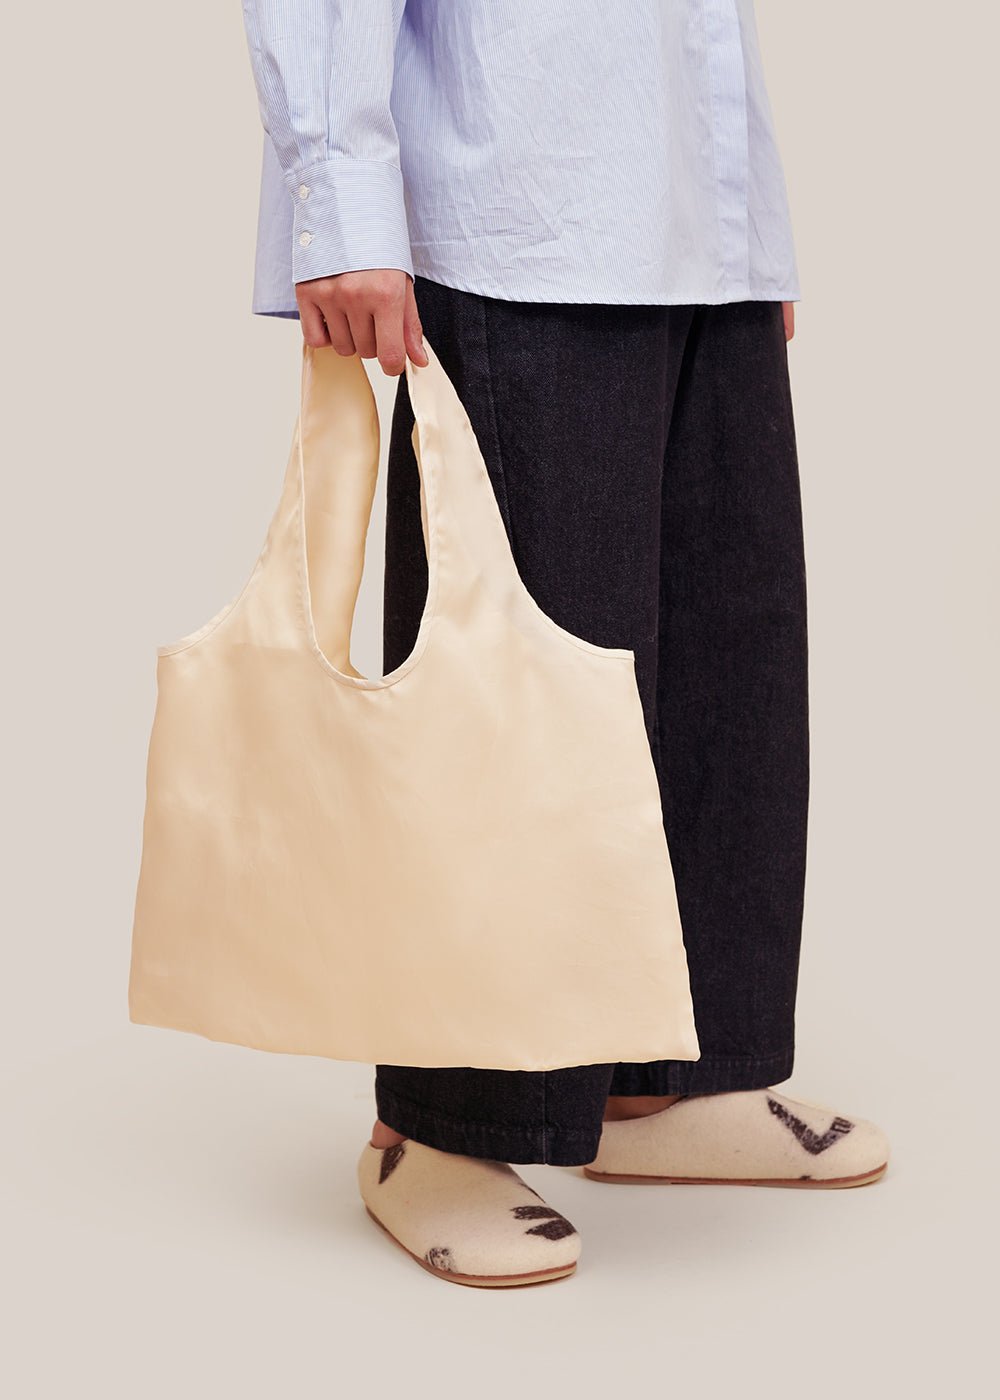 Lola Silk Organza Tote Bag